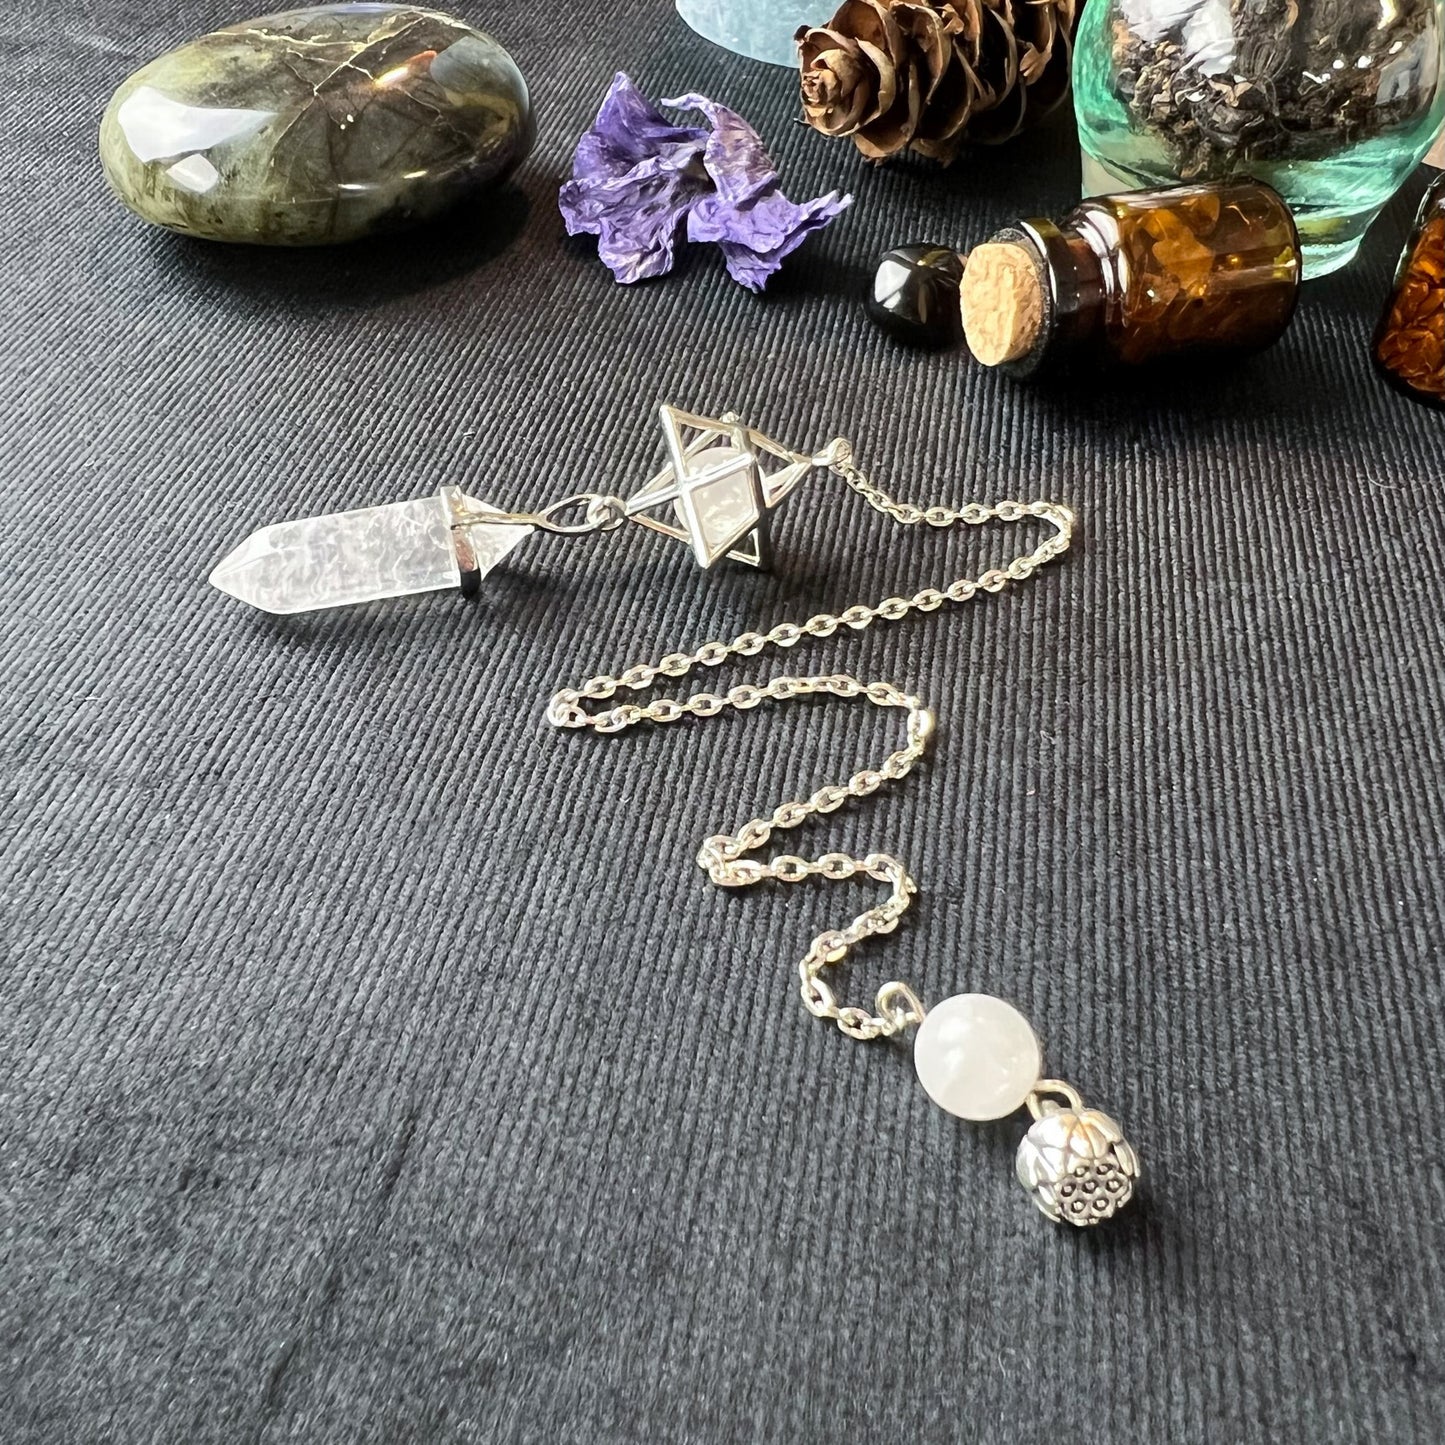 Clear quartz Merkaba and lotus seed divination pendulum Baguette Magick